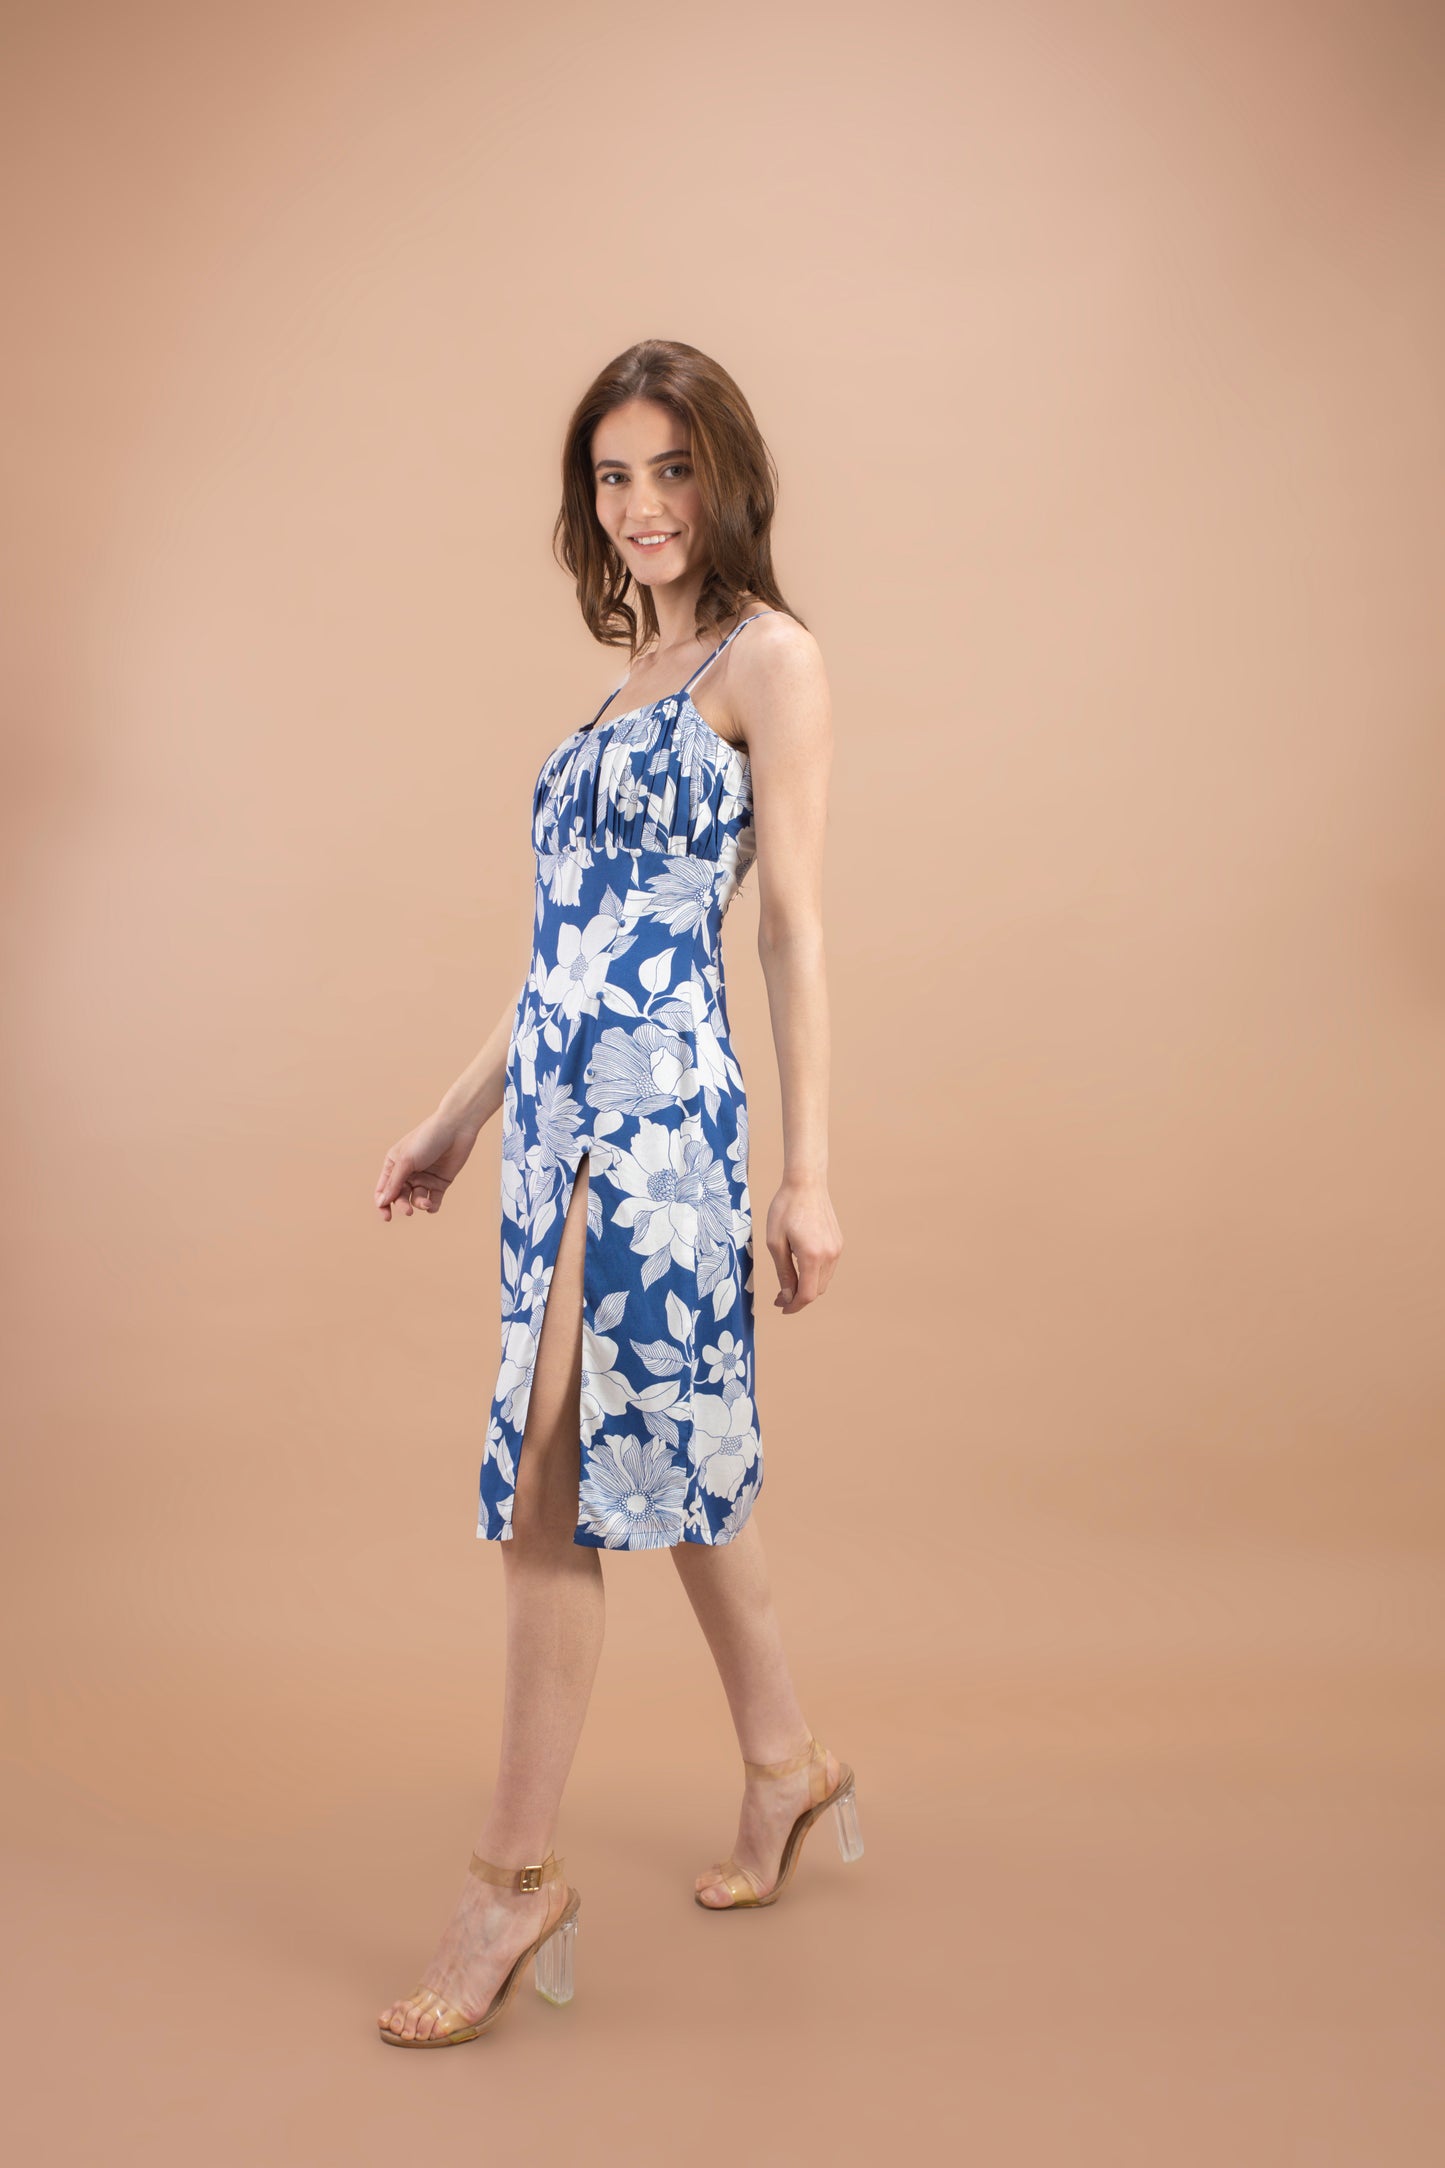 "Blue Floral Printed Slit Dress"